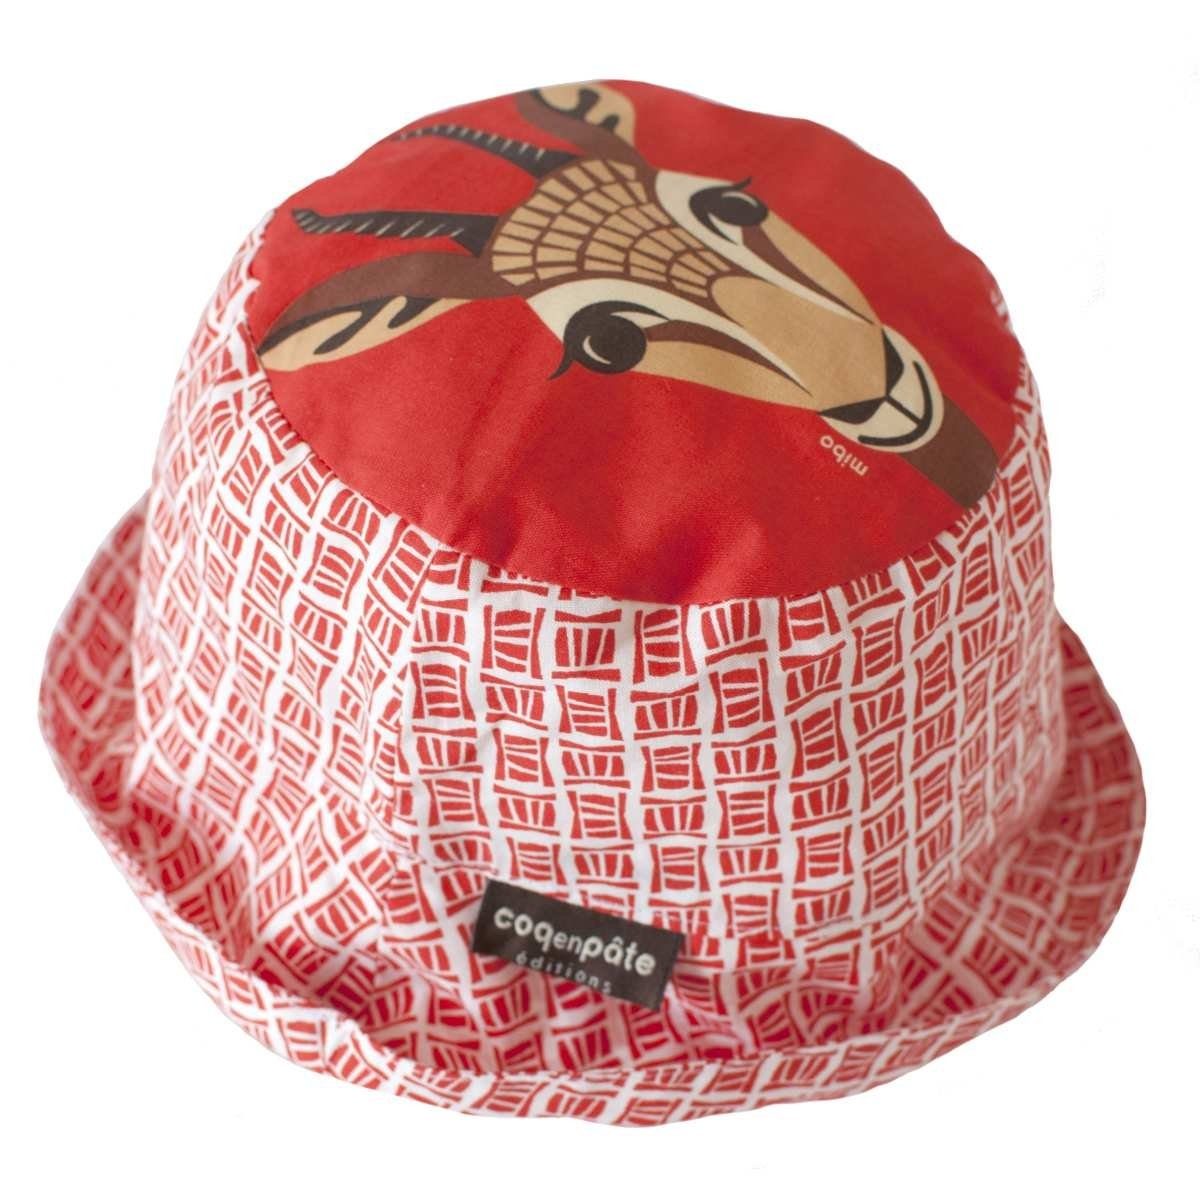 COQ EN PATE Sonnenhut Farbenfroher Kinder-Hut mit Tiermotiven und Mustern Sonnenschutz Gazelle - Größe: S